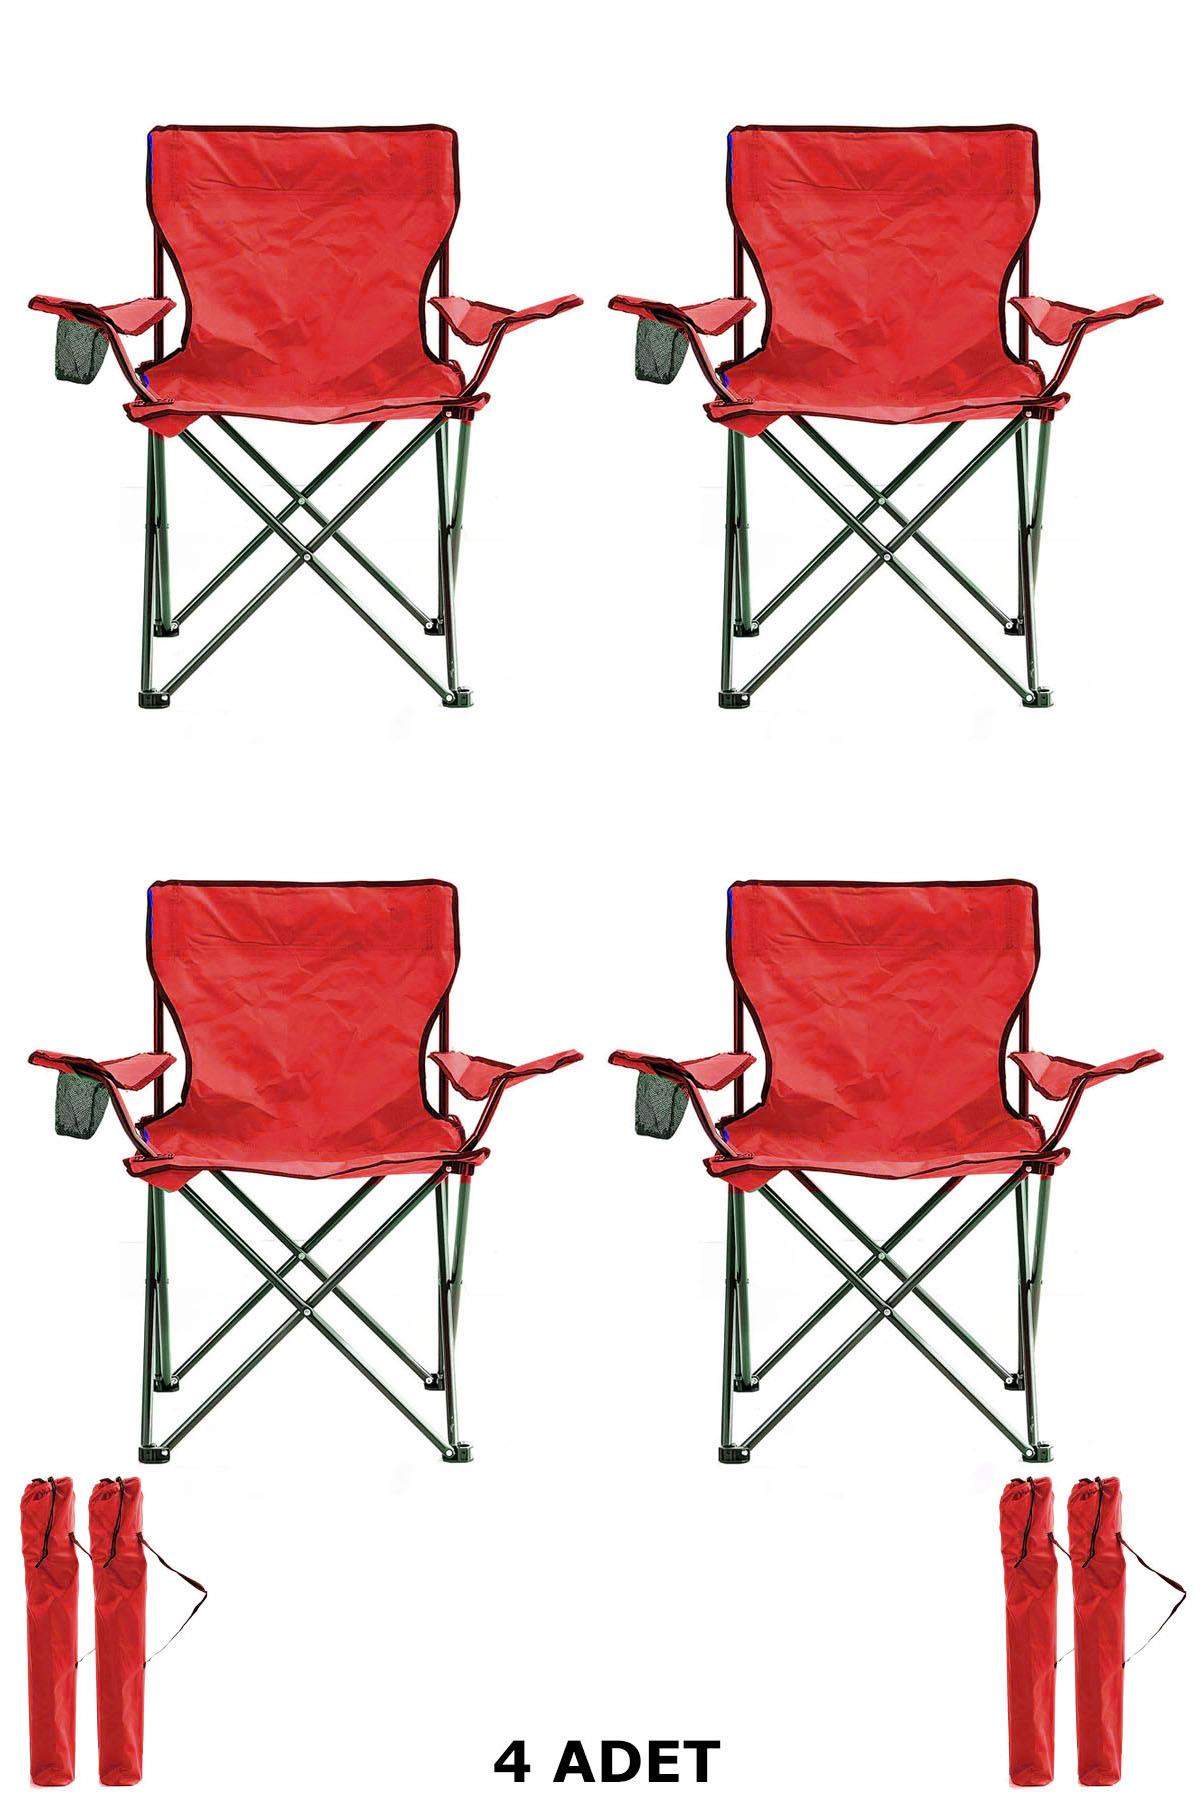 4 Adet Katlanır Çantalı Kamp Sandalyesi Rejisör Sandalye Kırmızı